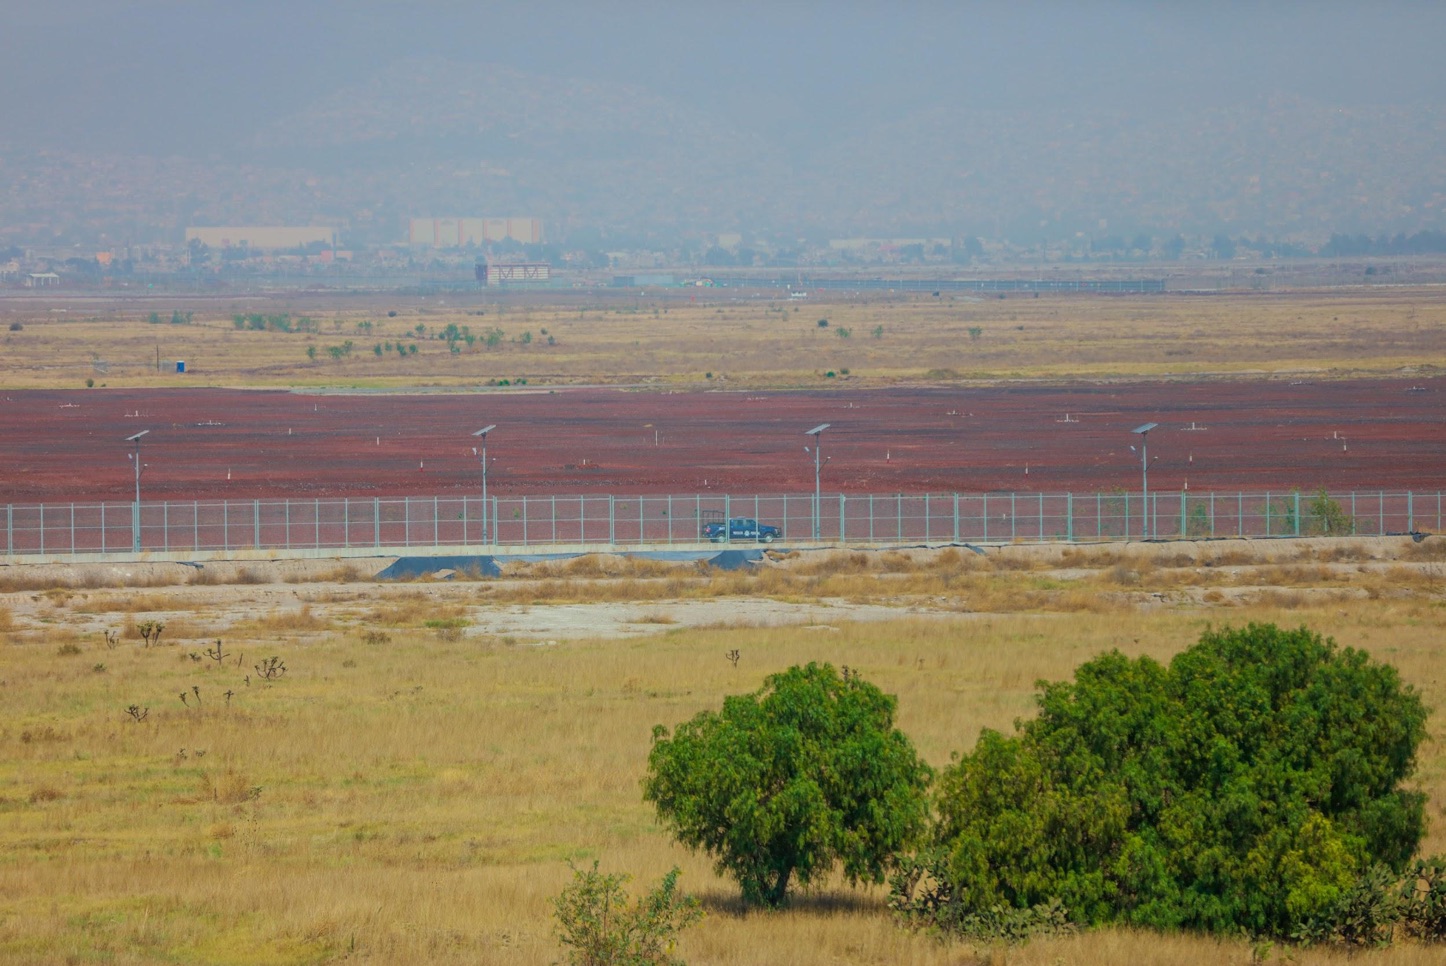 El terreno donde se constuía la plancha del aeropuerto, municipio de San Salvador Atenco. Foto: Daliri Oropeza.